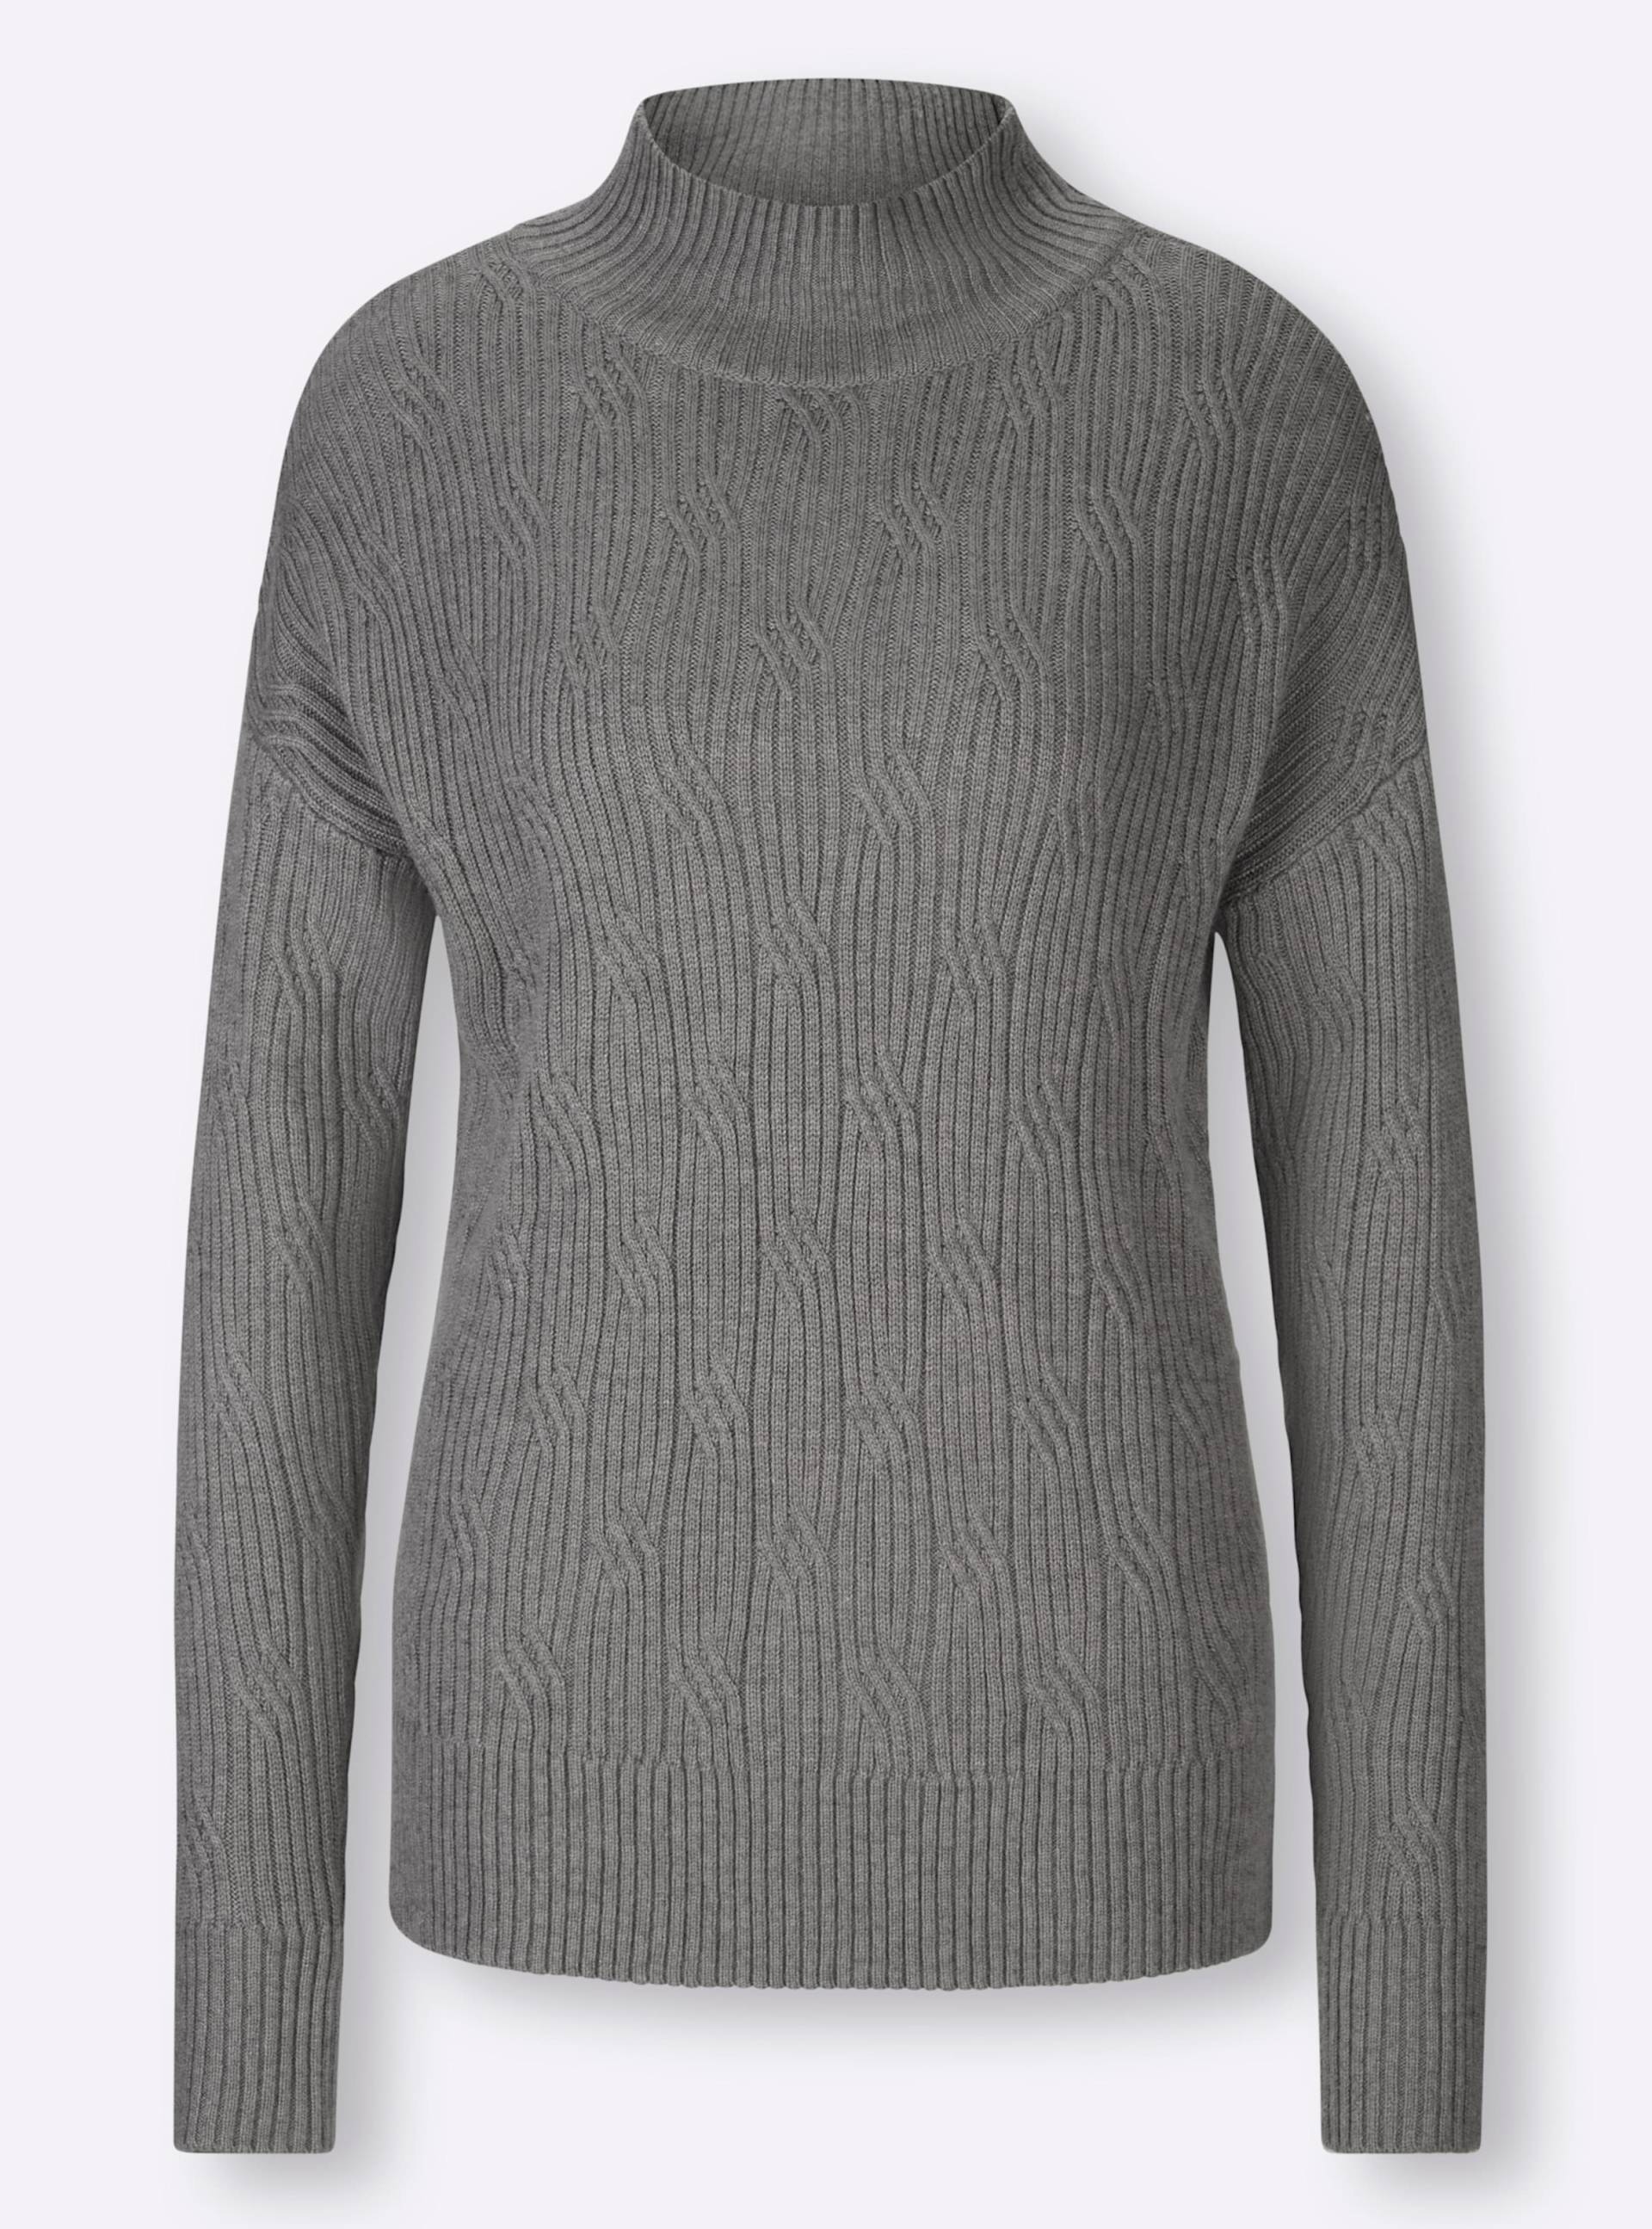 Stehkragen-Pullover in grau-meliert von heine